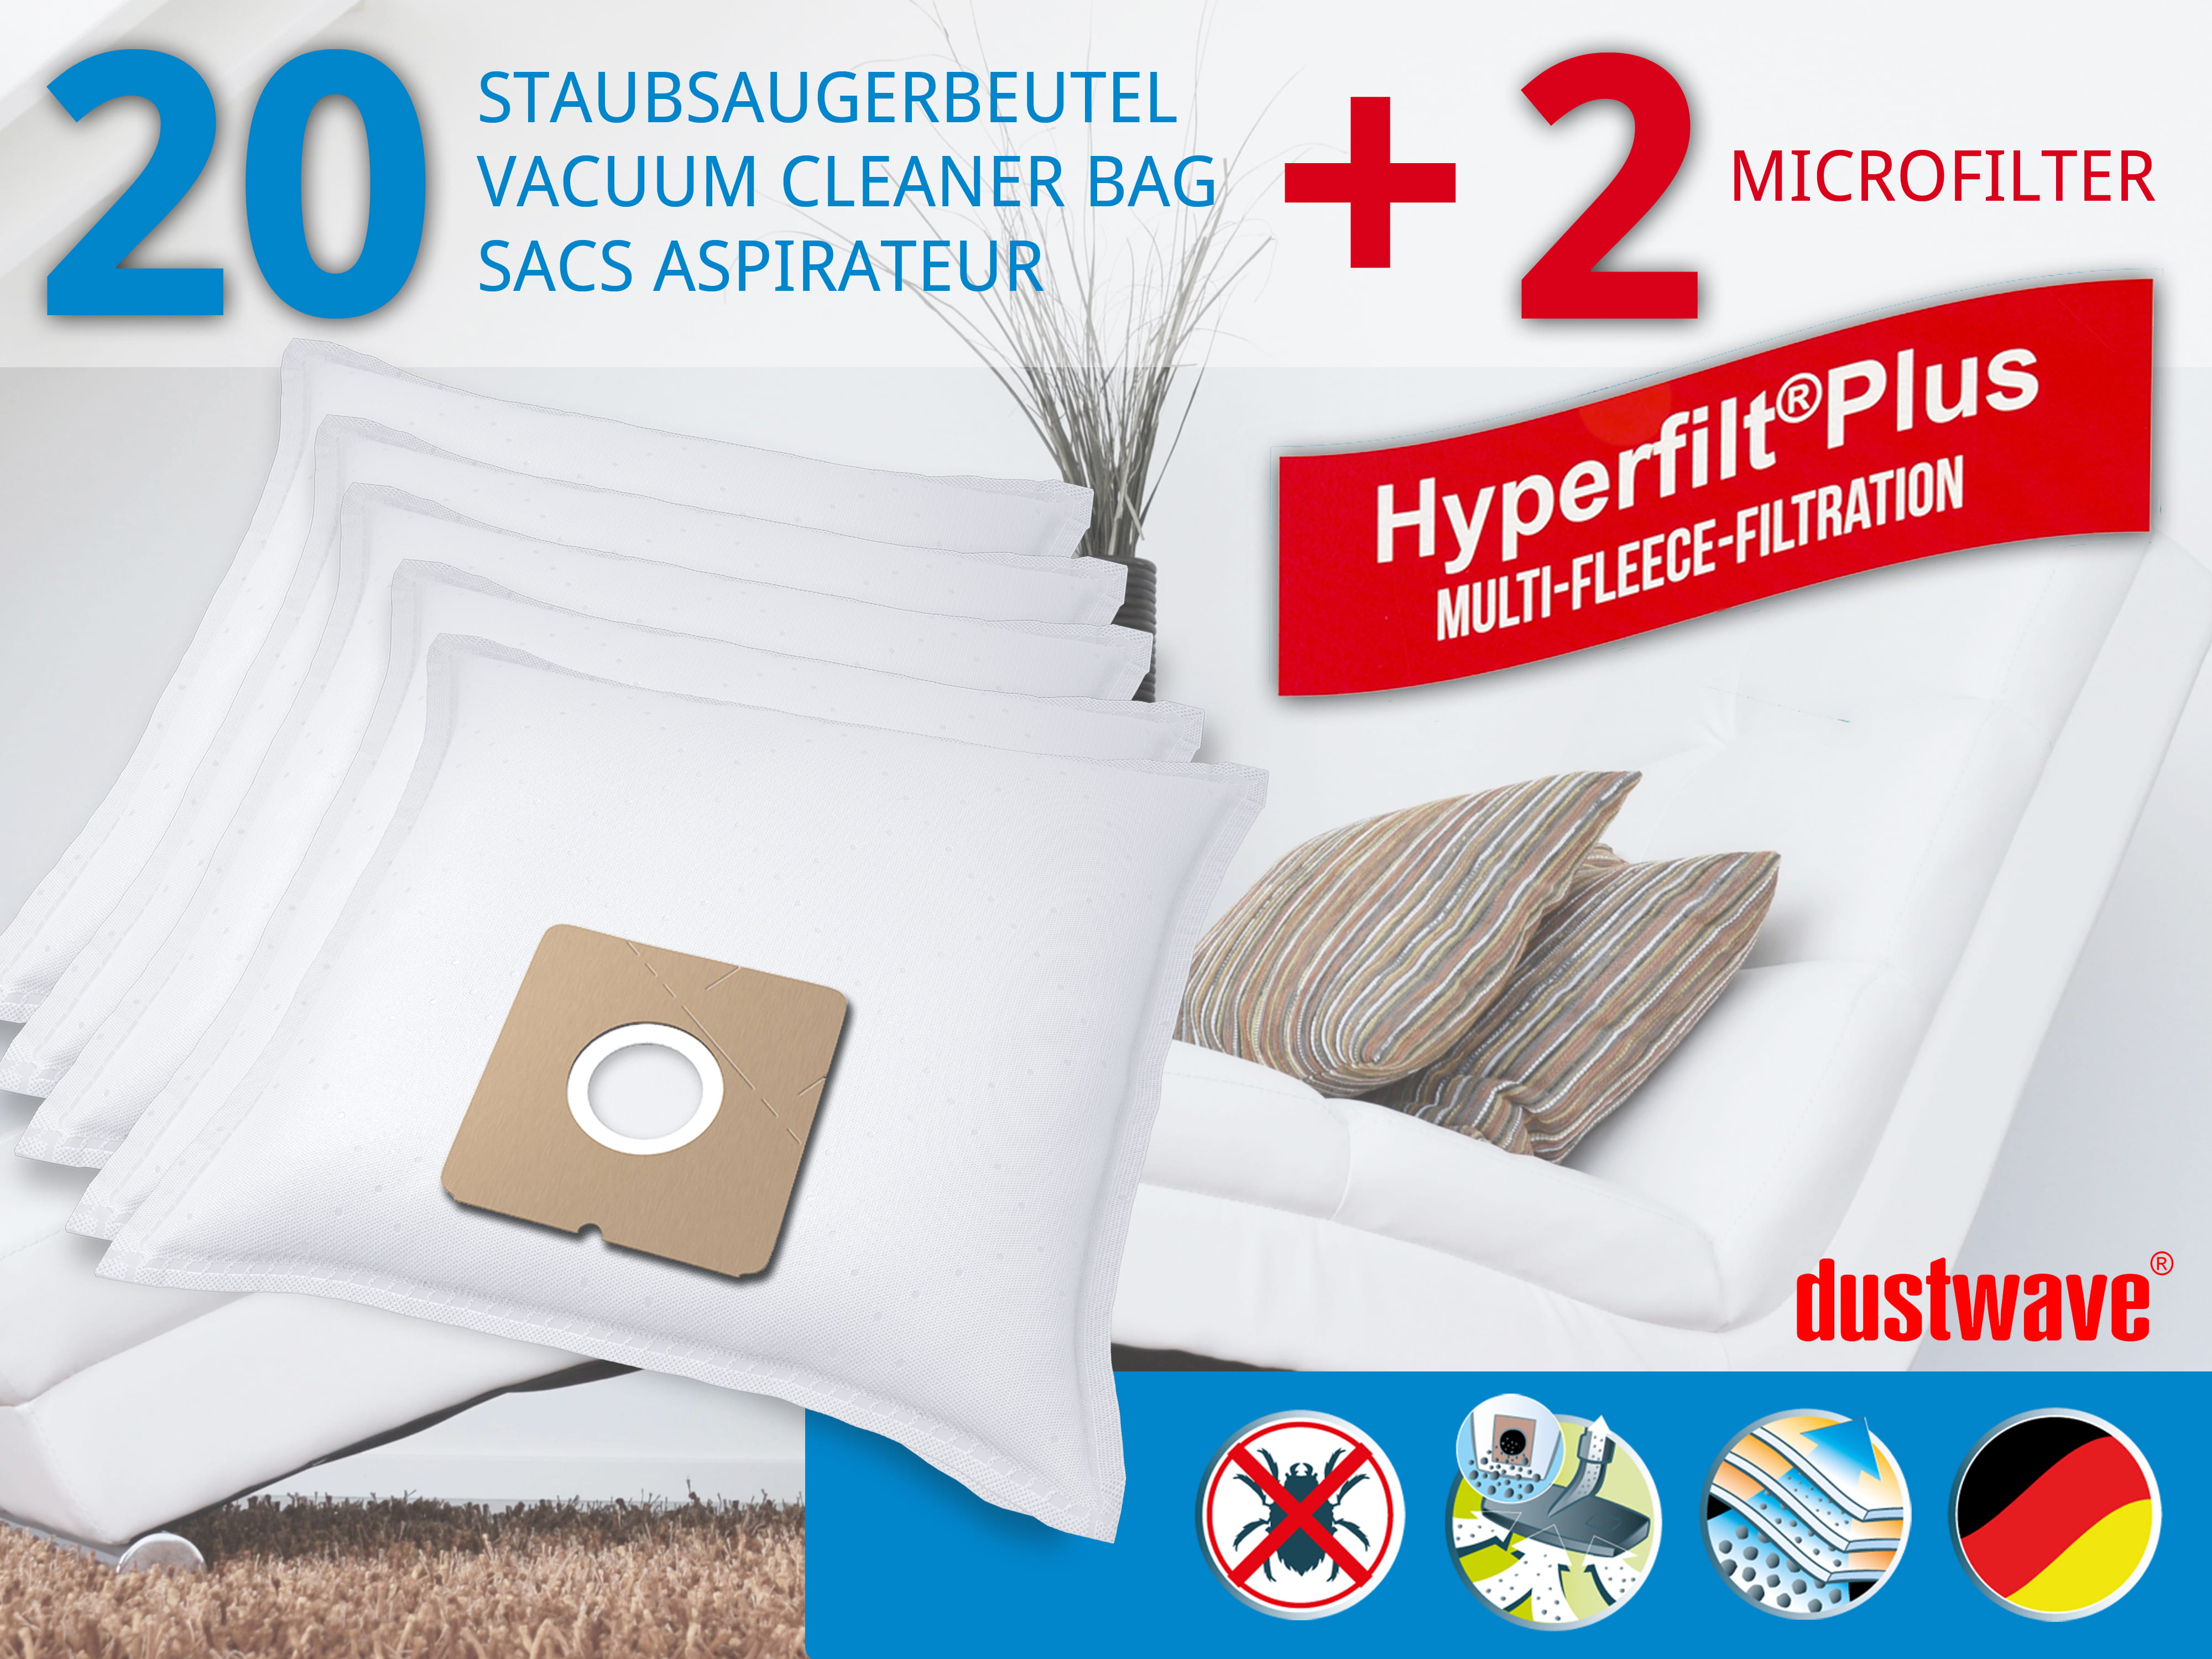 Dustwave® 20 Staubsaugerbeutel für Ayco 1410 - hocheffizient, mehrlagiges Mikrovlies mit Hygieneverschluss - Made in Germany